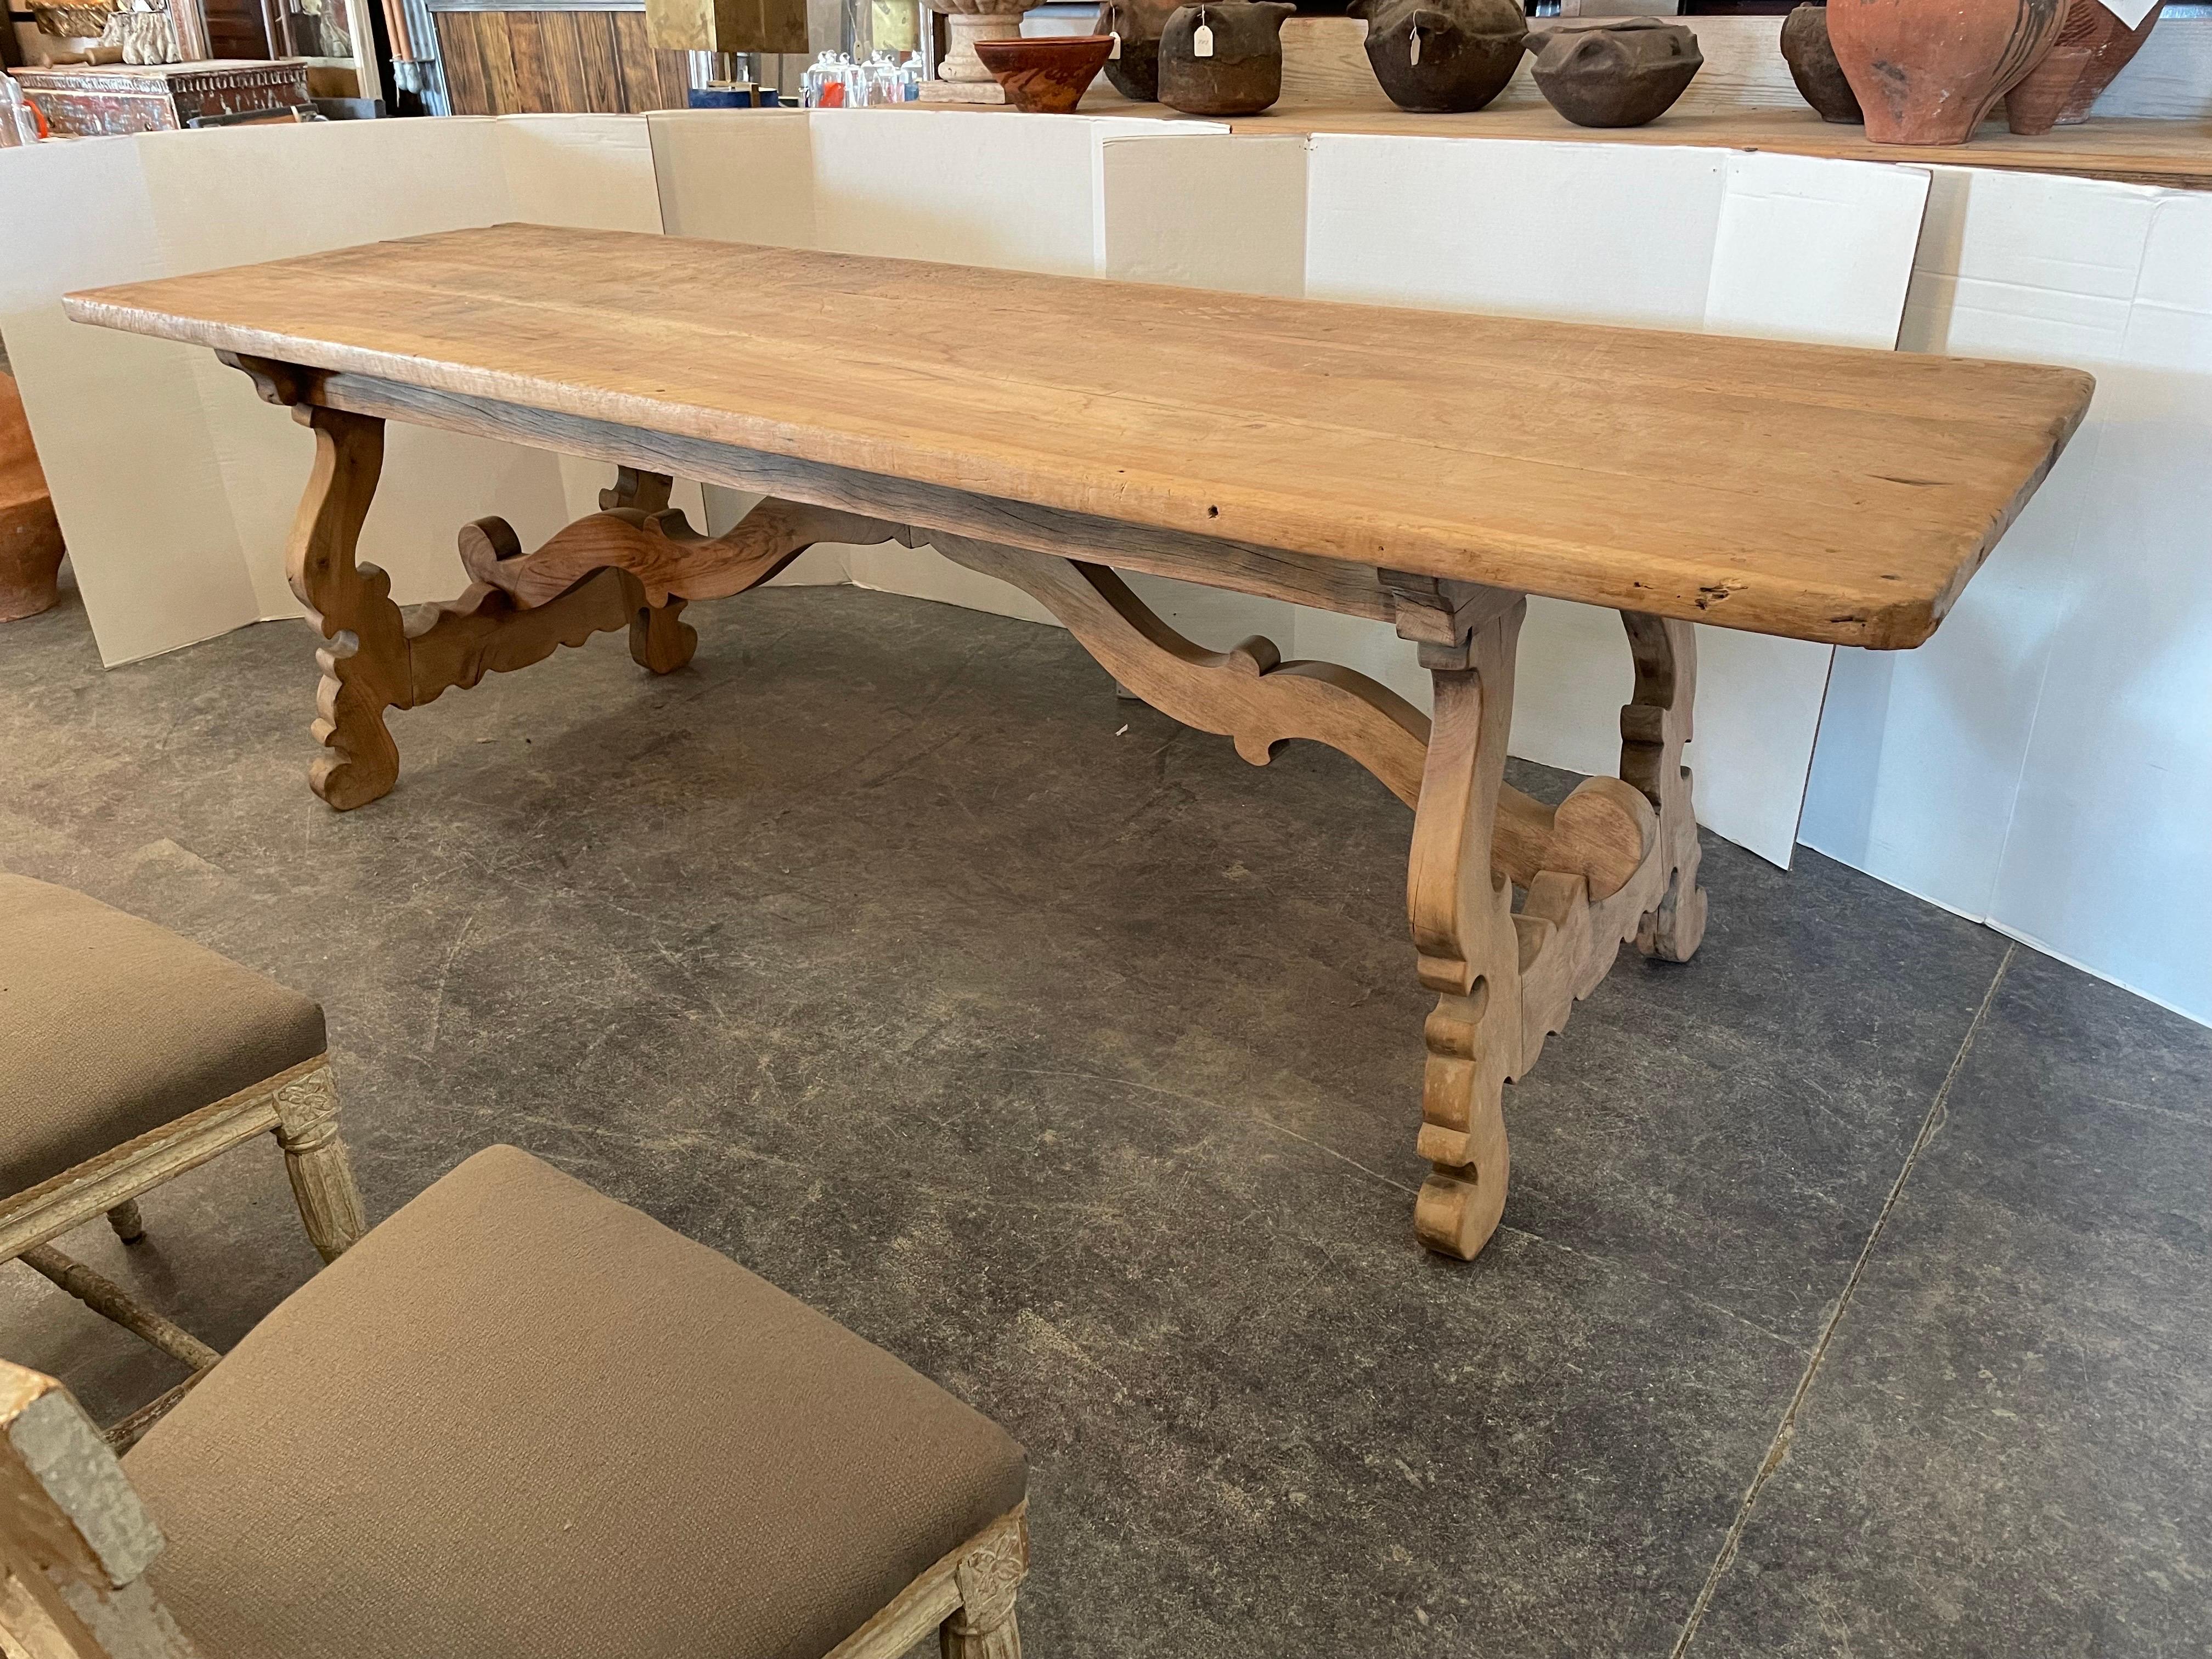 Dieser italienische Nussbaumtisch aus der Toskana wurde mit einer Platte aus dem 18. Jahrhundert und einem Untergestell aus dem 19. Die Platte hat die schöne abgenutzte Patina, die zu einem Tisch dieses Alters gehört. Es sieht aus, als sei es